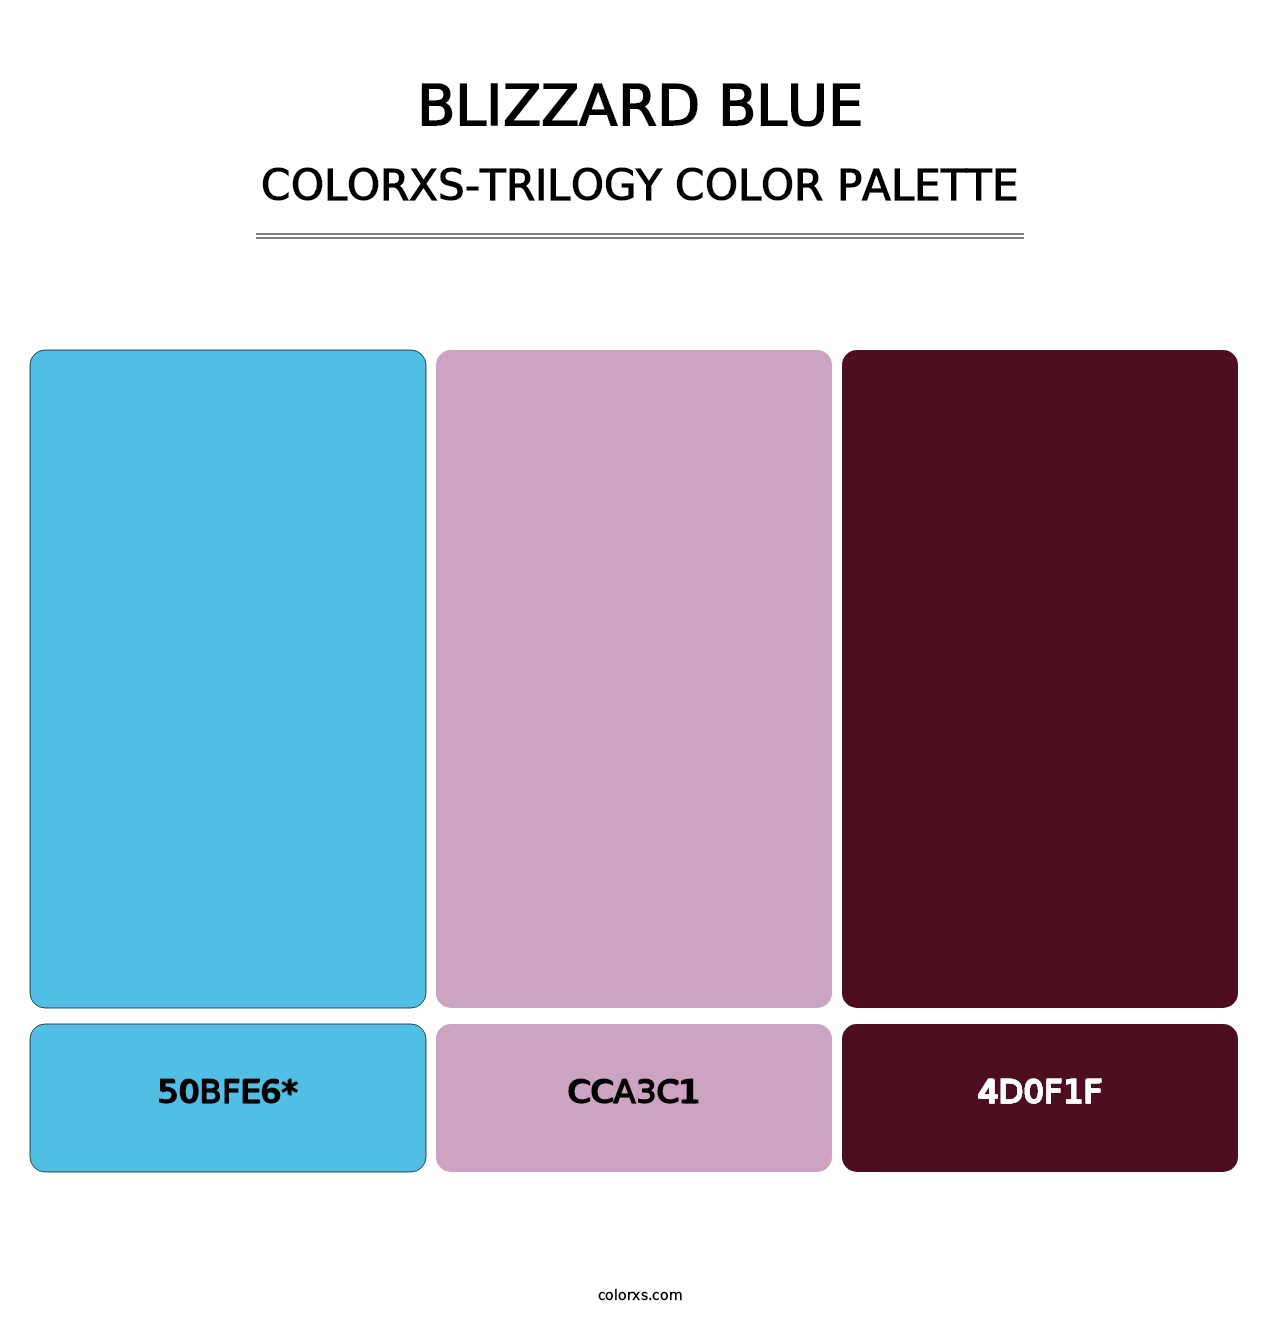 Blizzard Blue - Colorxs Trilogy Palette